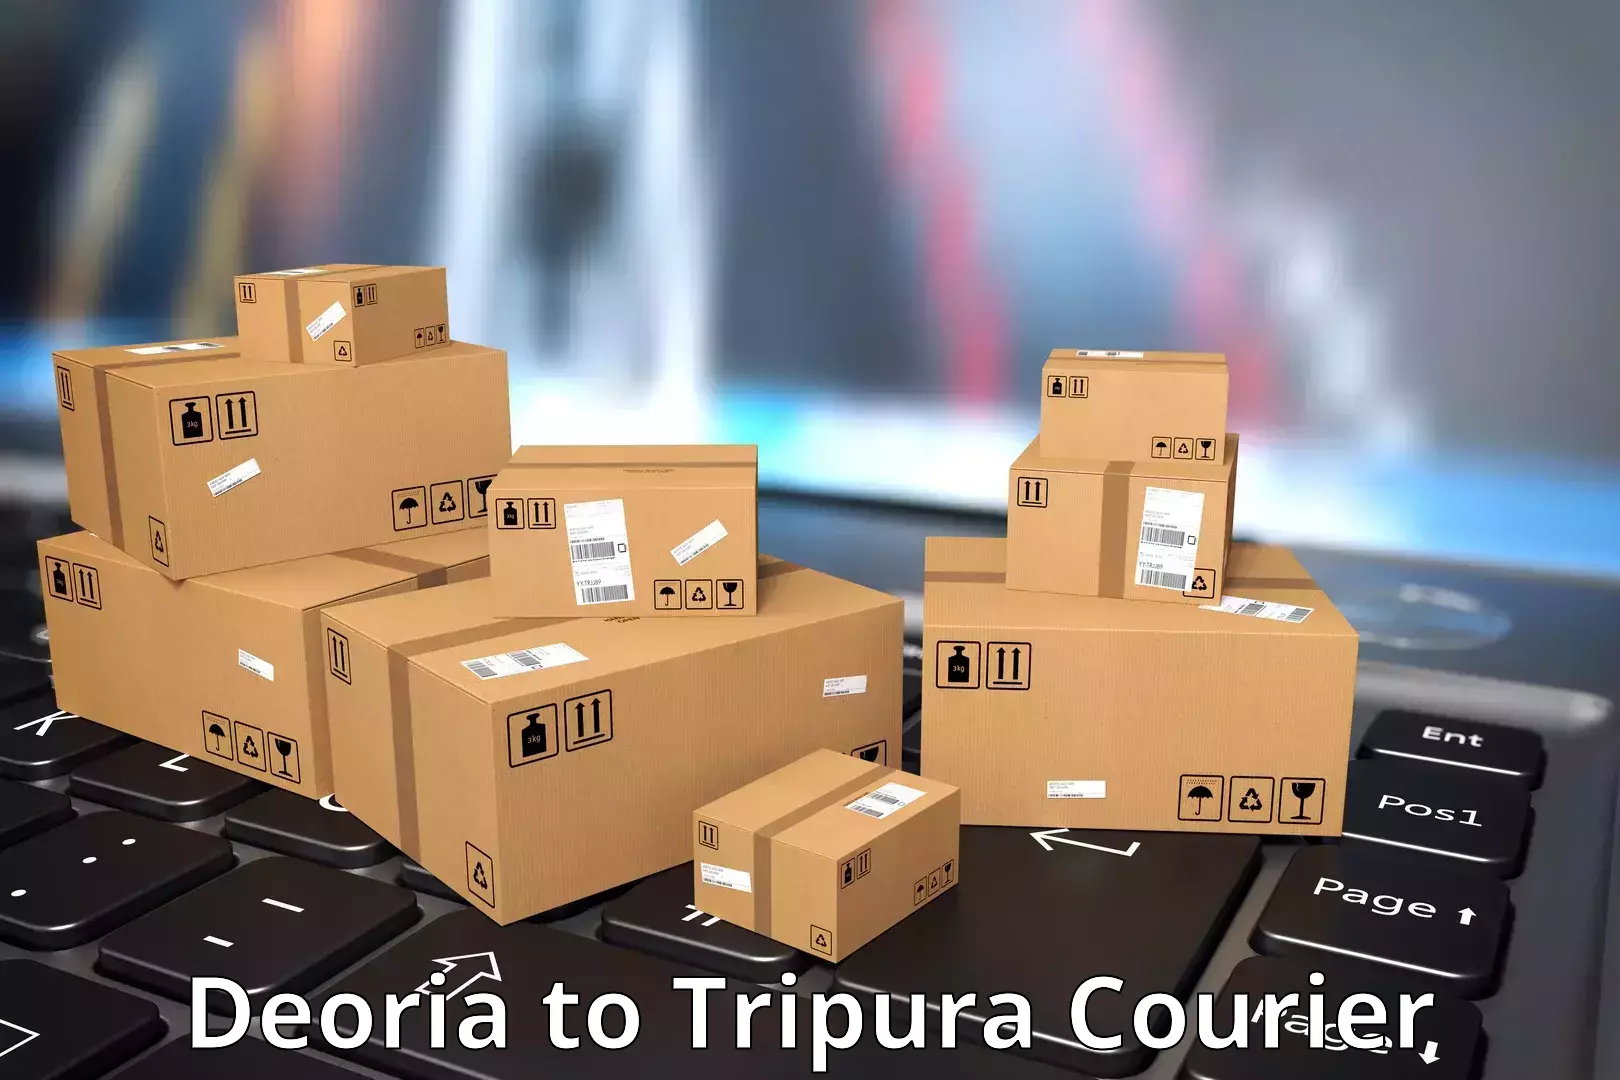 Premium courier services Deoria to Udaipur Tripura